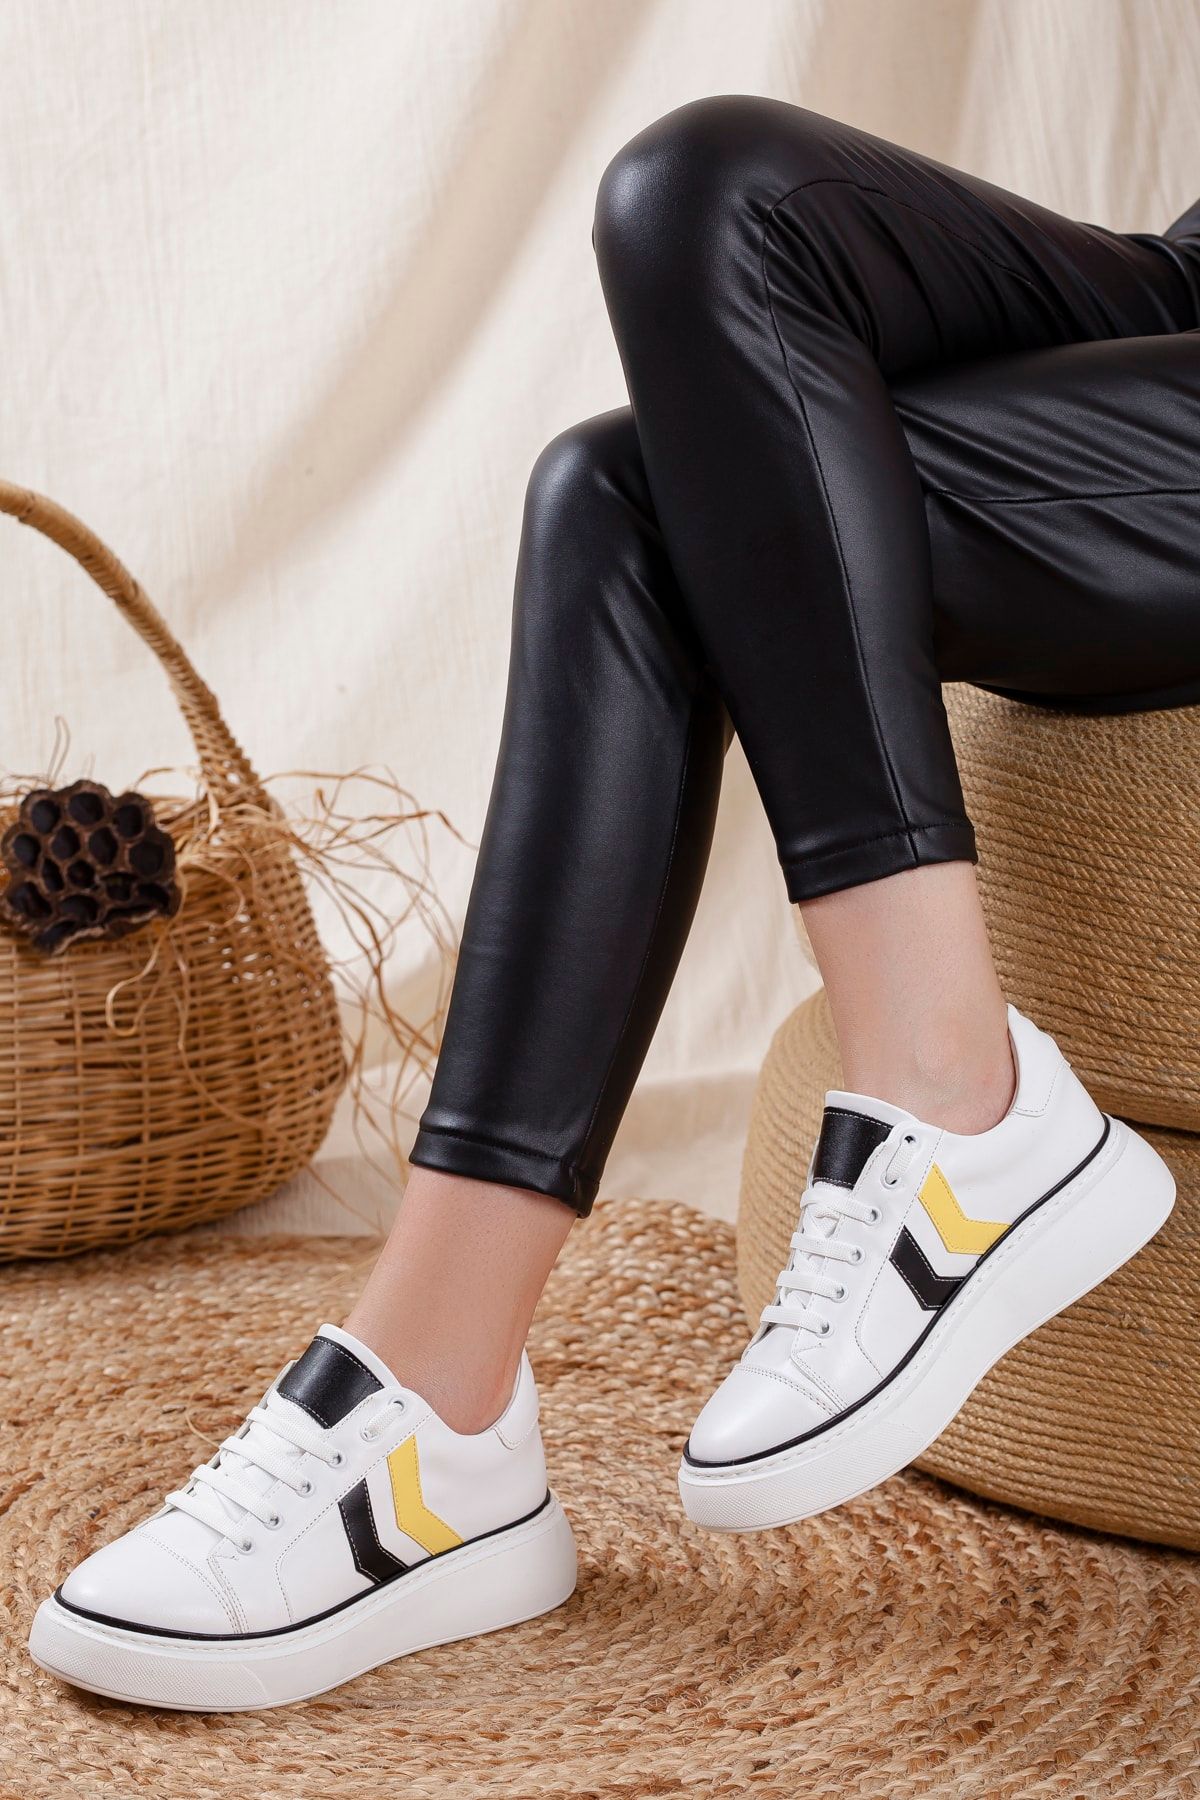 Odal Shoes Unisex Beyaz-siyah Şeritli Sneakers Ayakkabı Hmml01